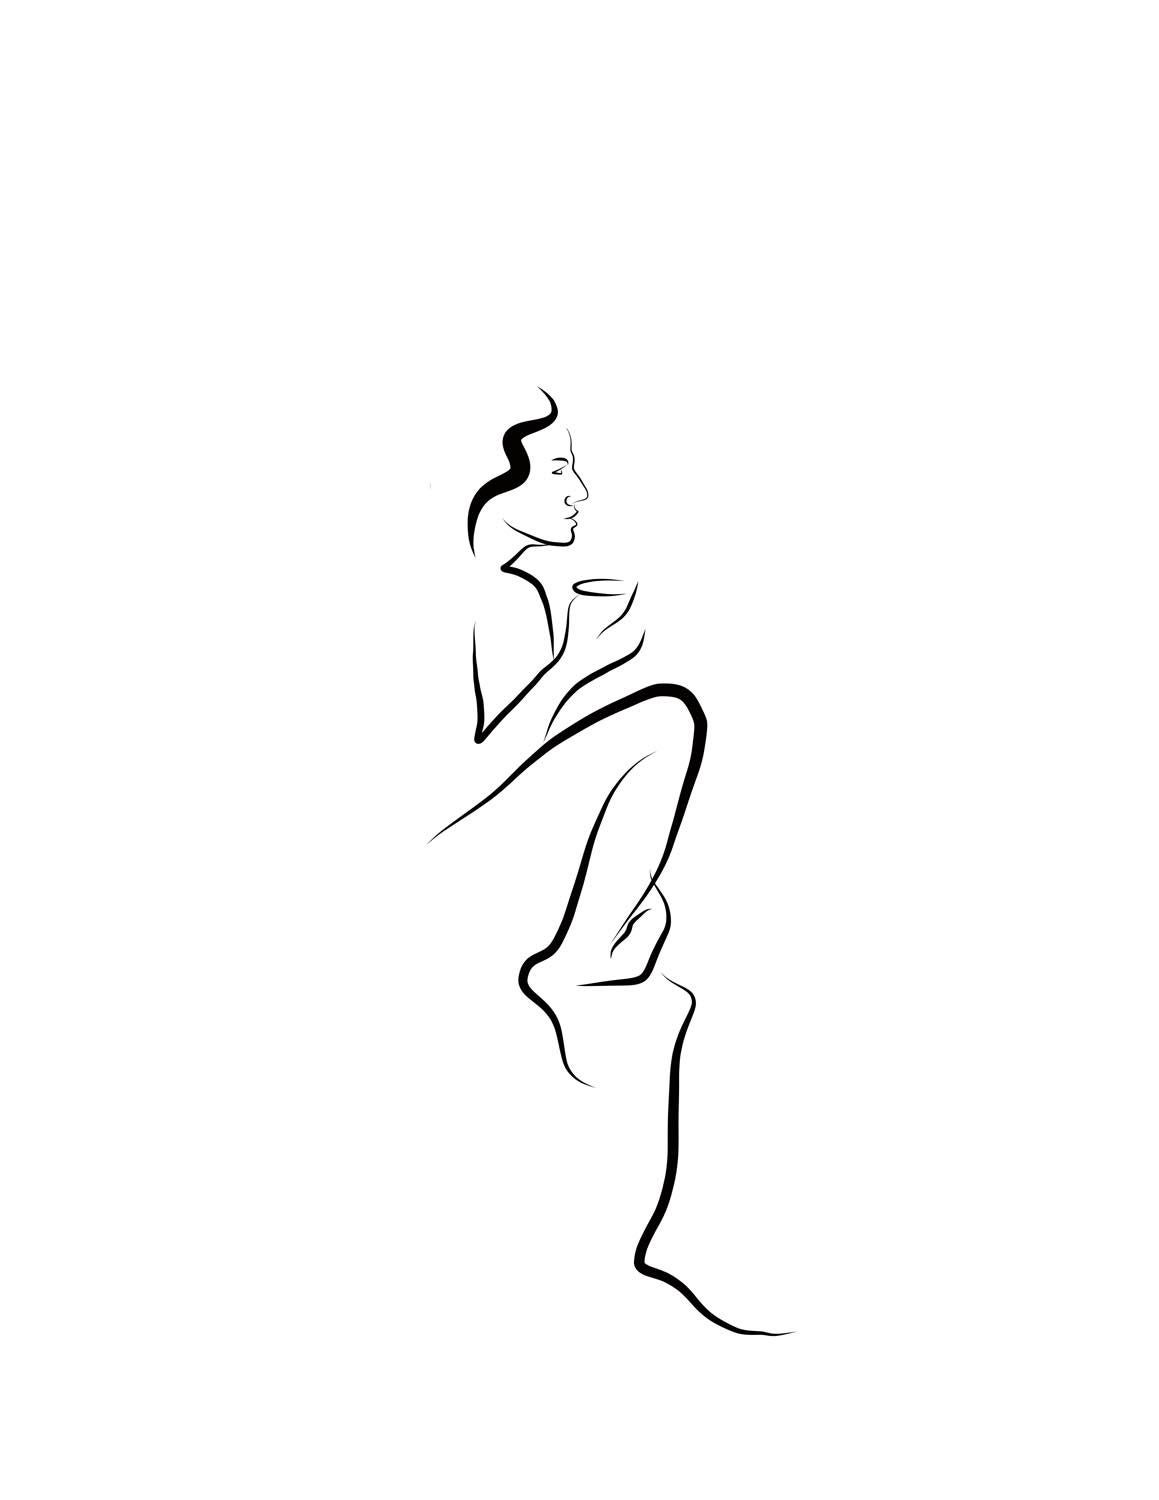 Michael Binkley Nude Print - Haiku #51, 1/50 - Digital Vector Drawing Seated Female Nude Figure Sip Coffee